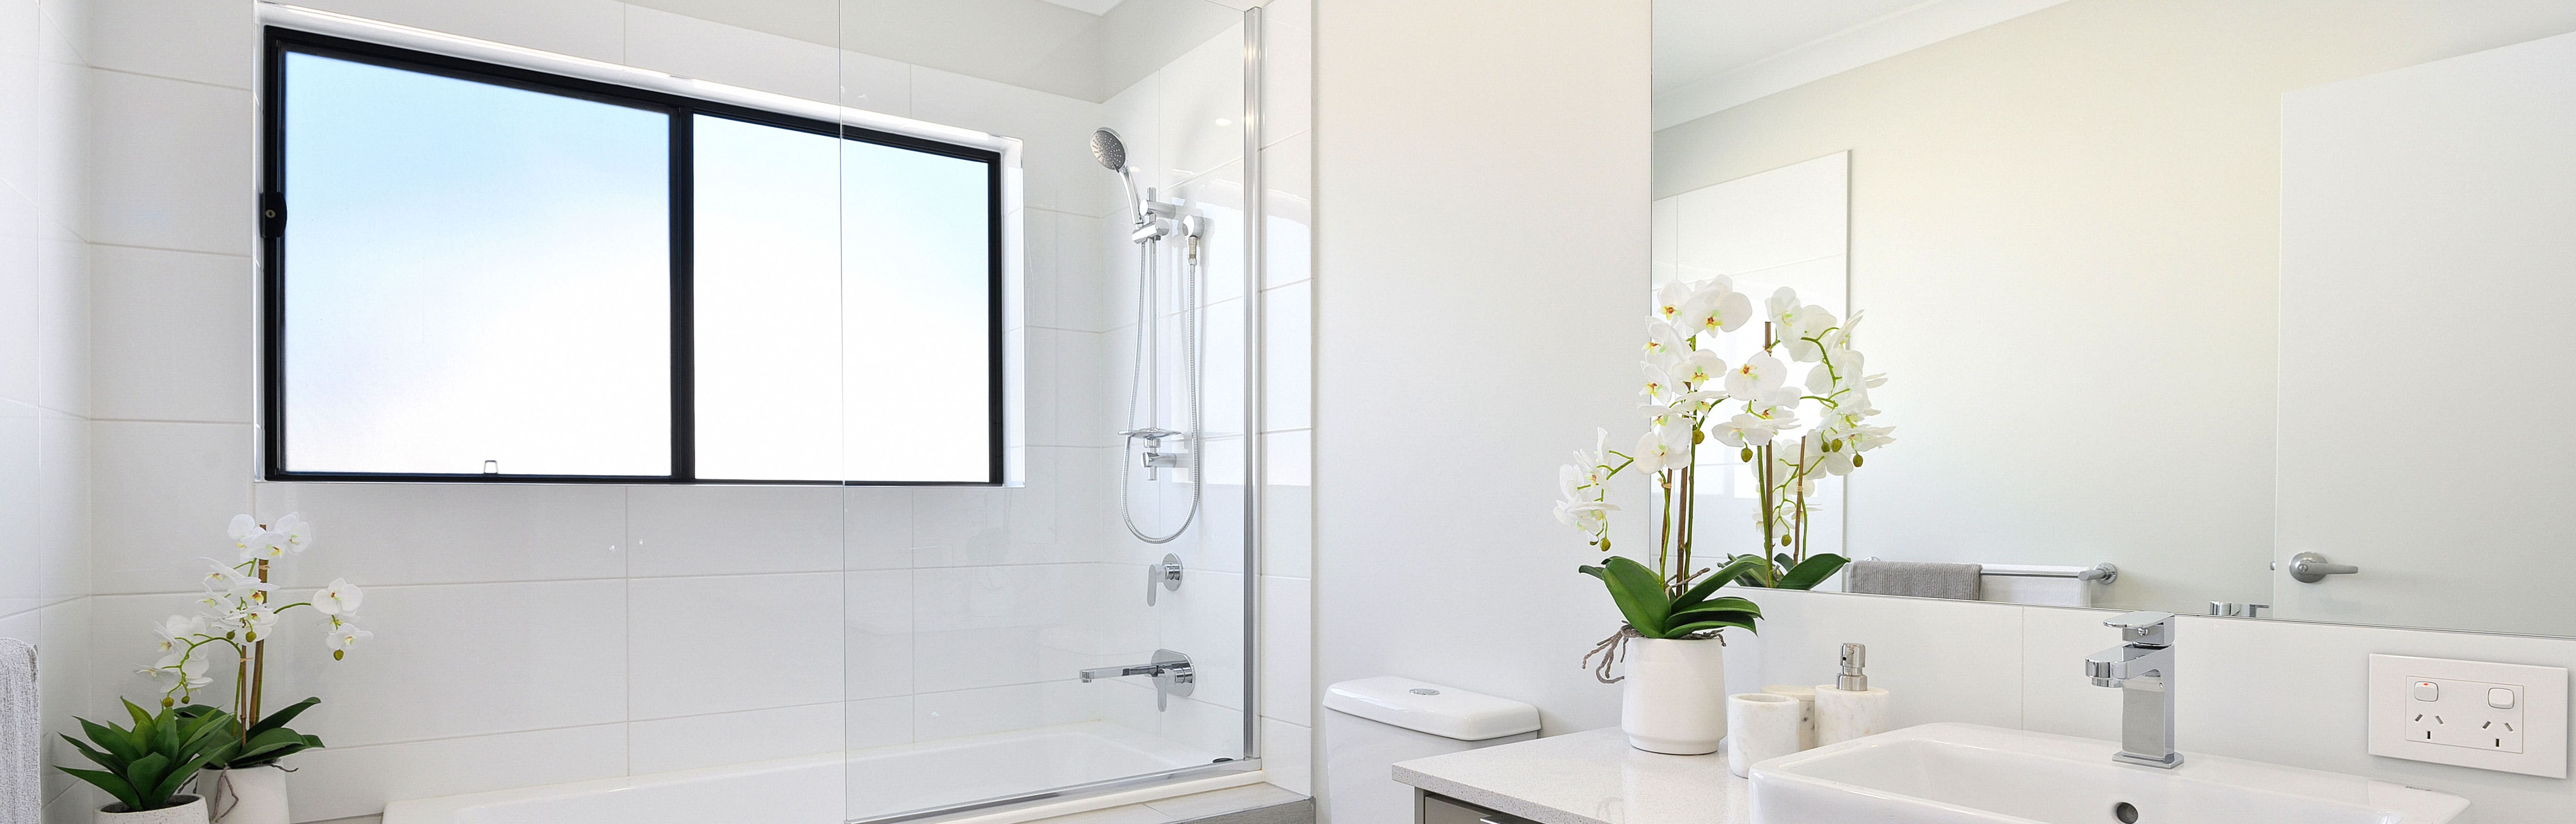 Frameless Fixed Shower Screen over a bath